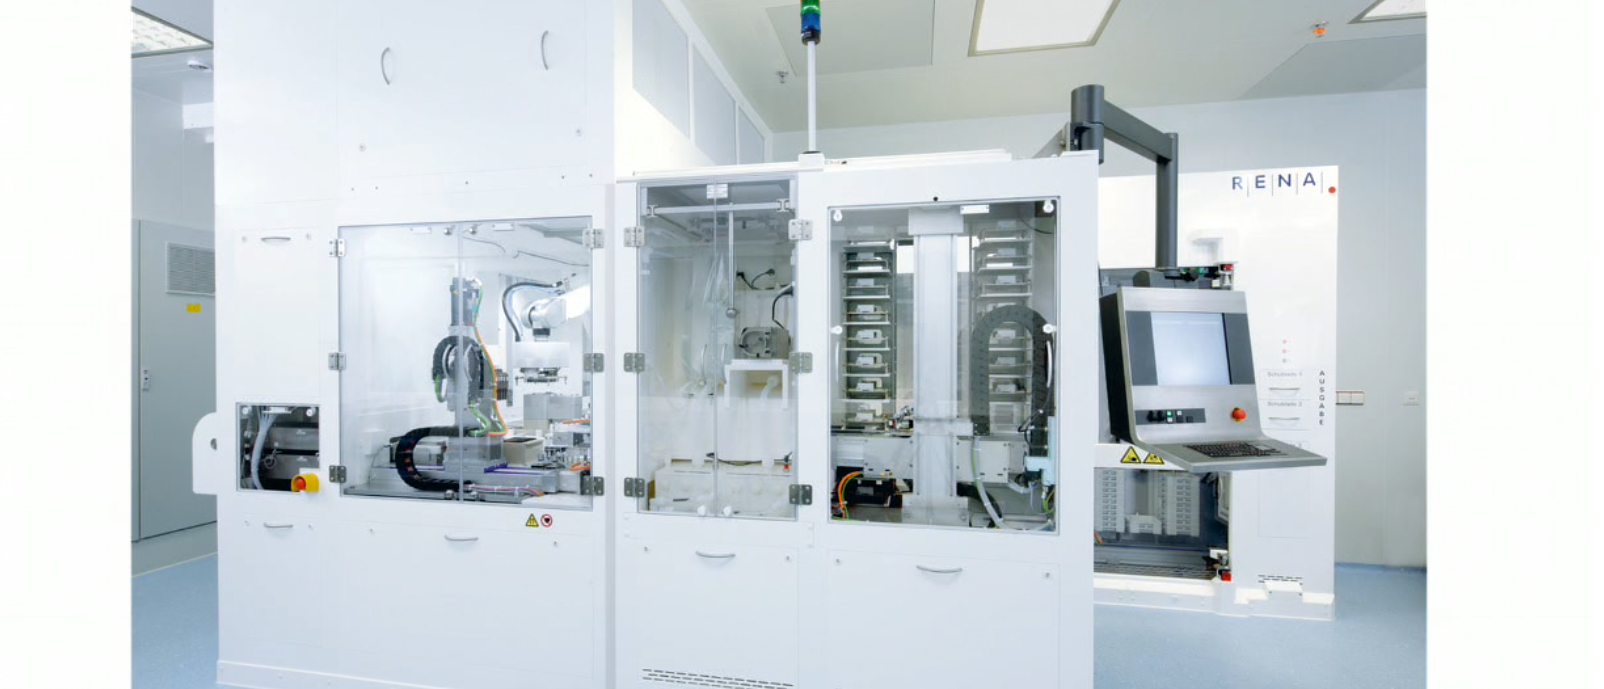 Hochautomatisierte Anlage zur Beschichtung und Biofunktionalisierung von Dentalimplantaten im Reinraum eines Medizintechnikunternehmens